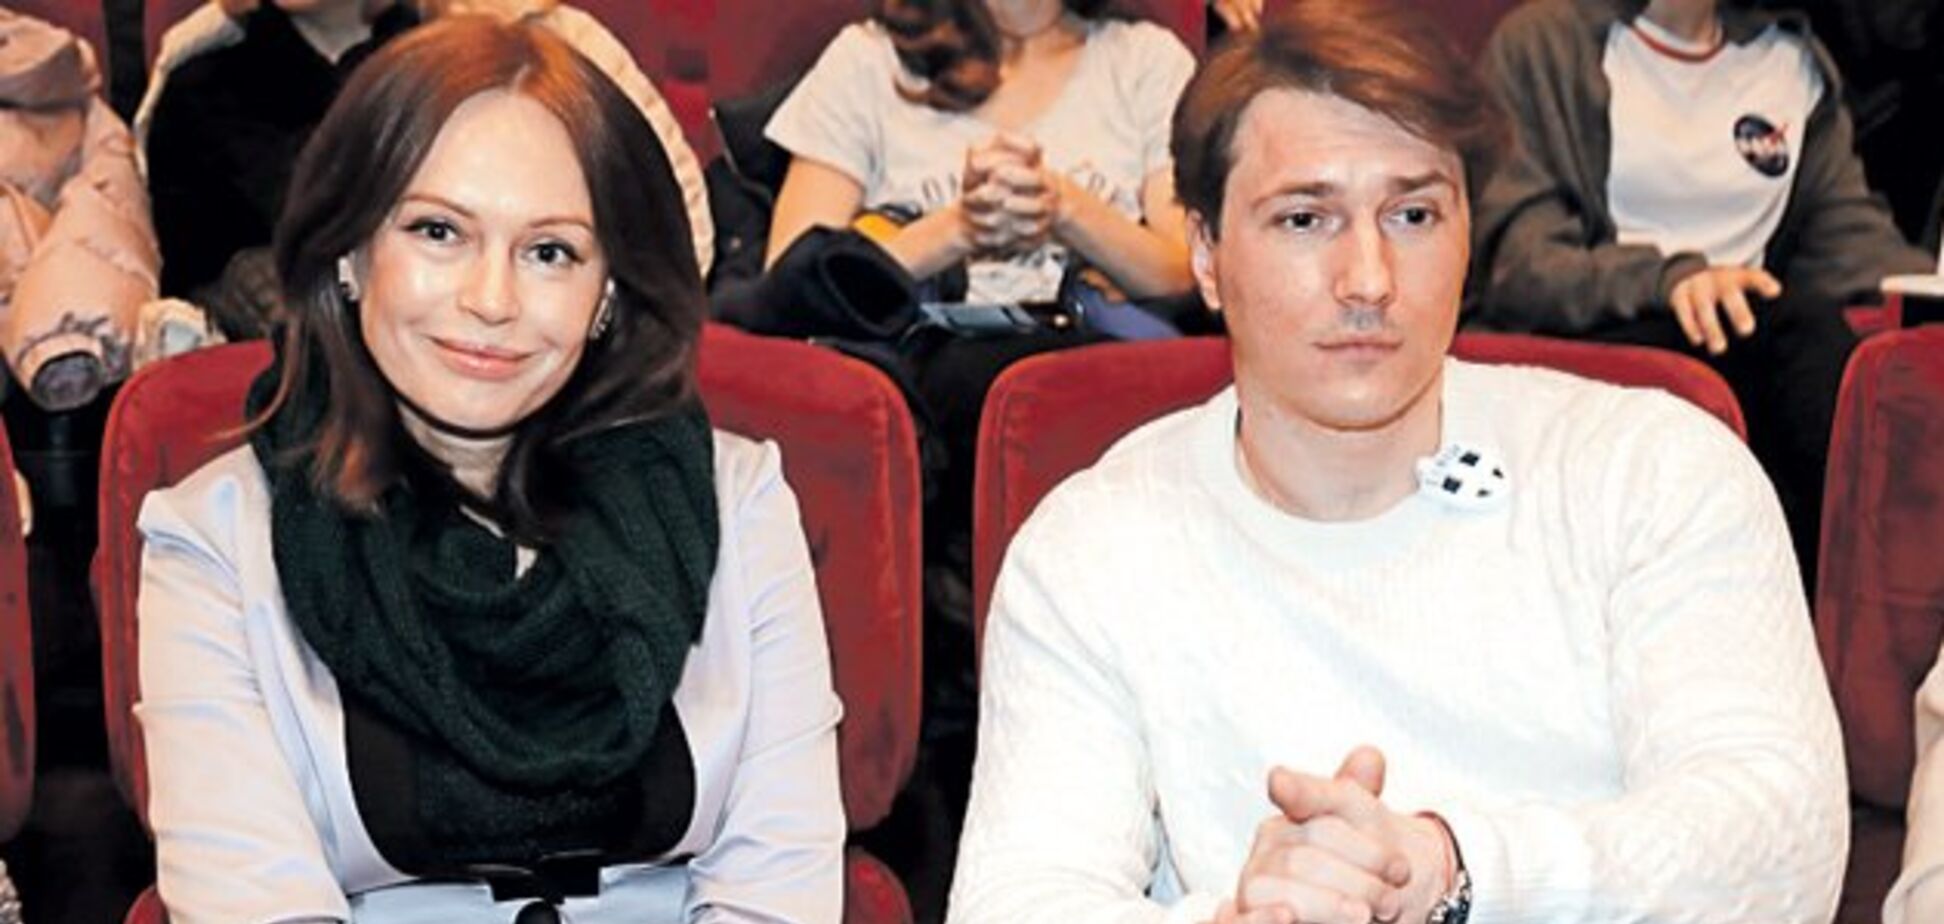 Йому 36, а їй 53: екс-дружина Безрукова вийшла у світ із молодим бойфрендом